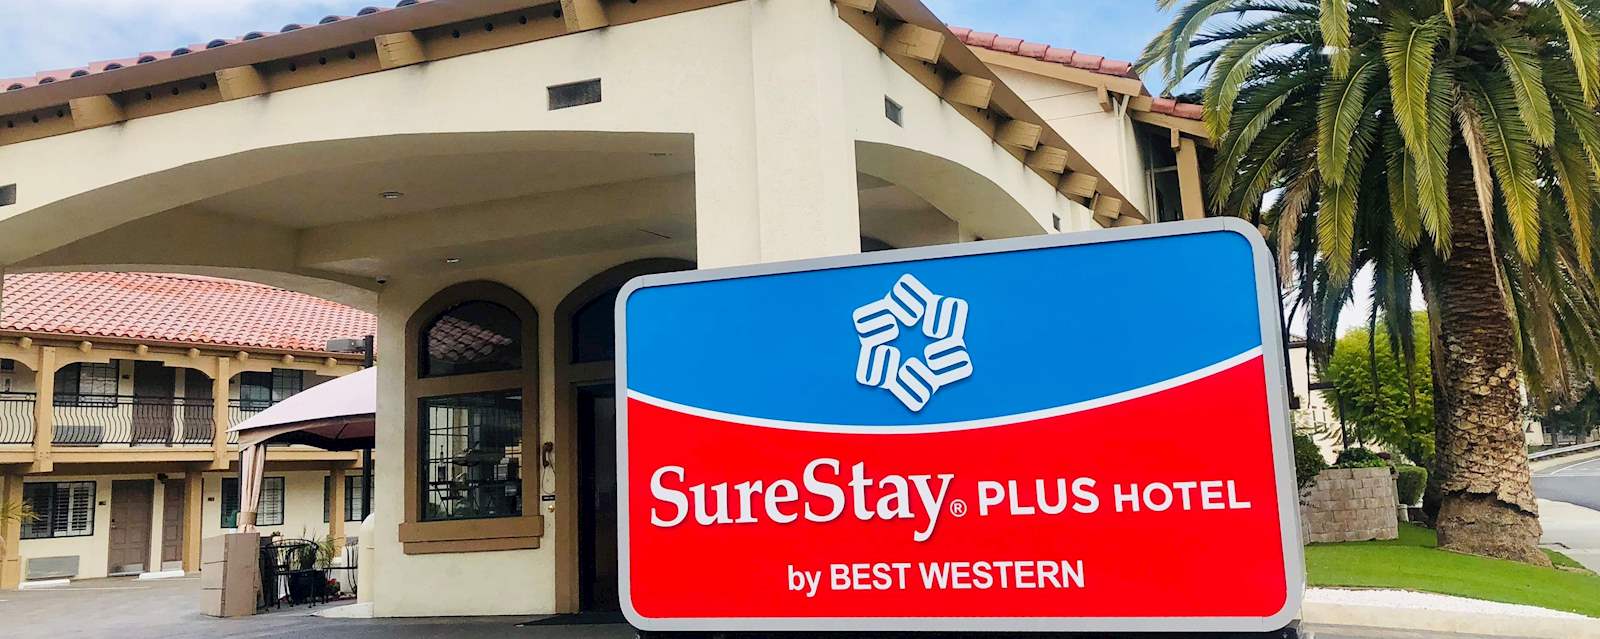 SureStay Plus Santa Clara Silicon Valley
